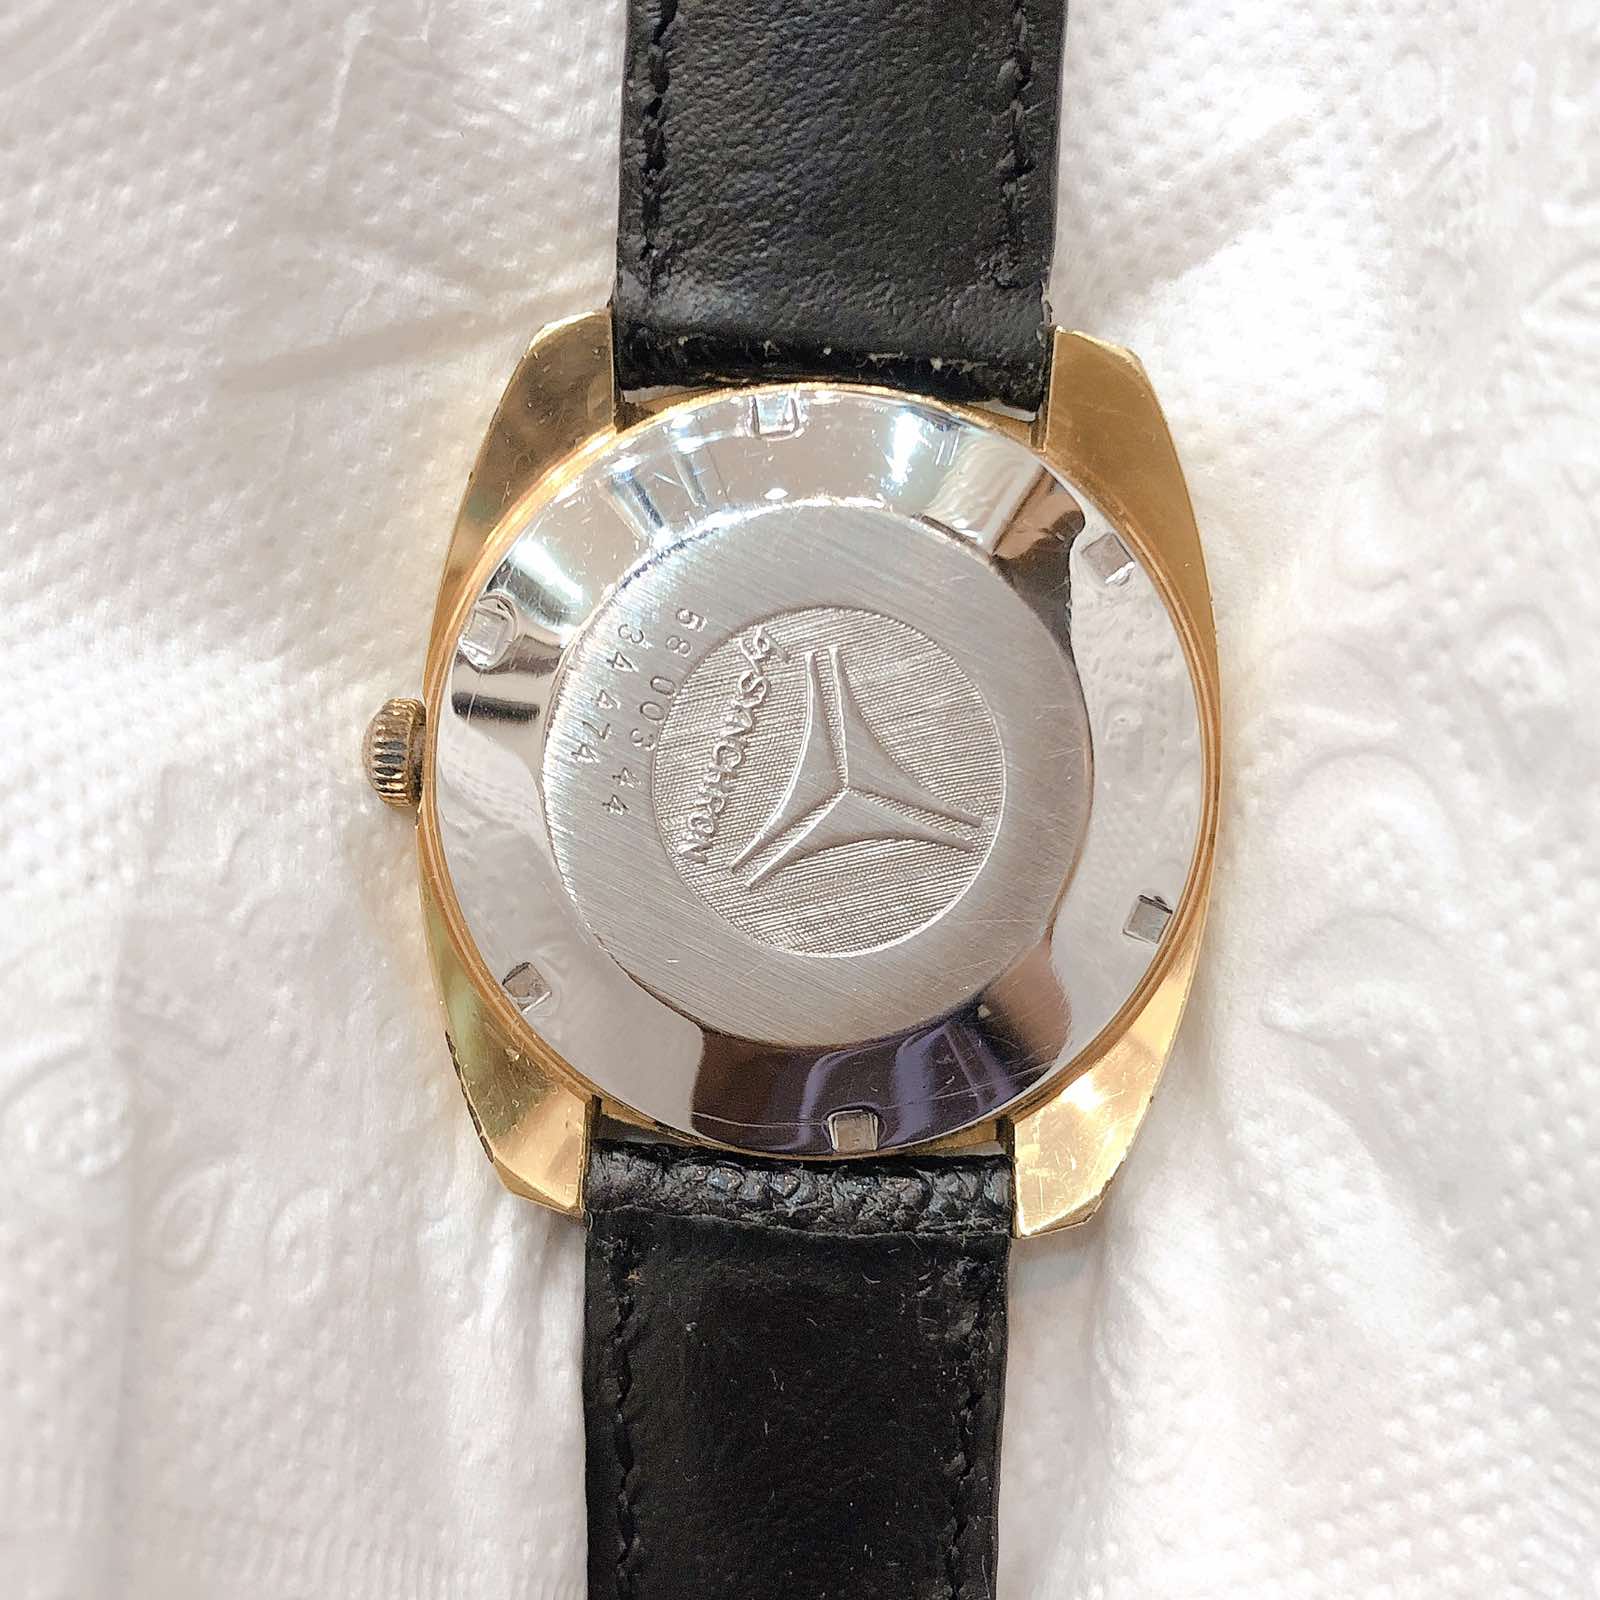 Đồng hồ cổ CYMA Automatic lacke chính hãng Thuỵ Sĩ